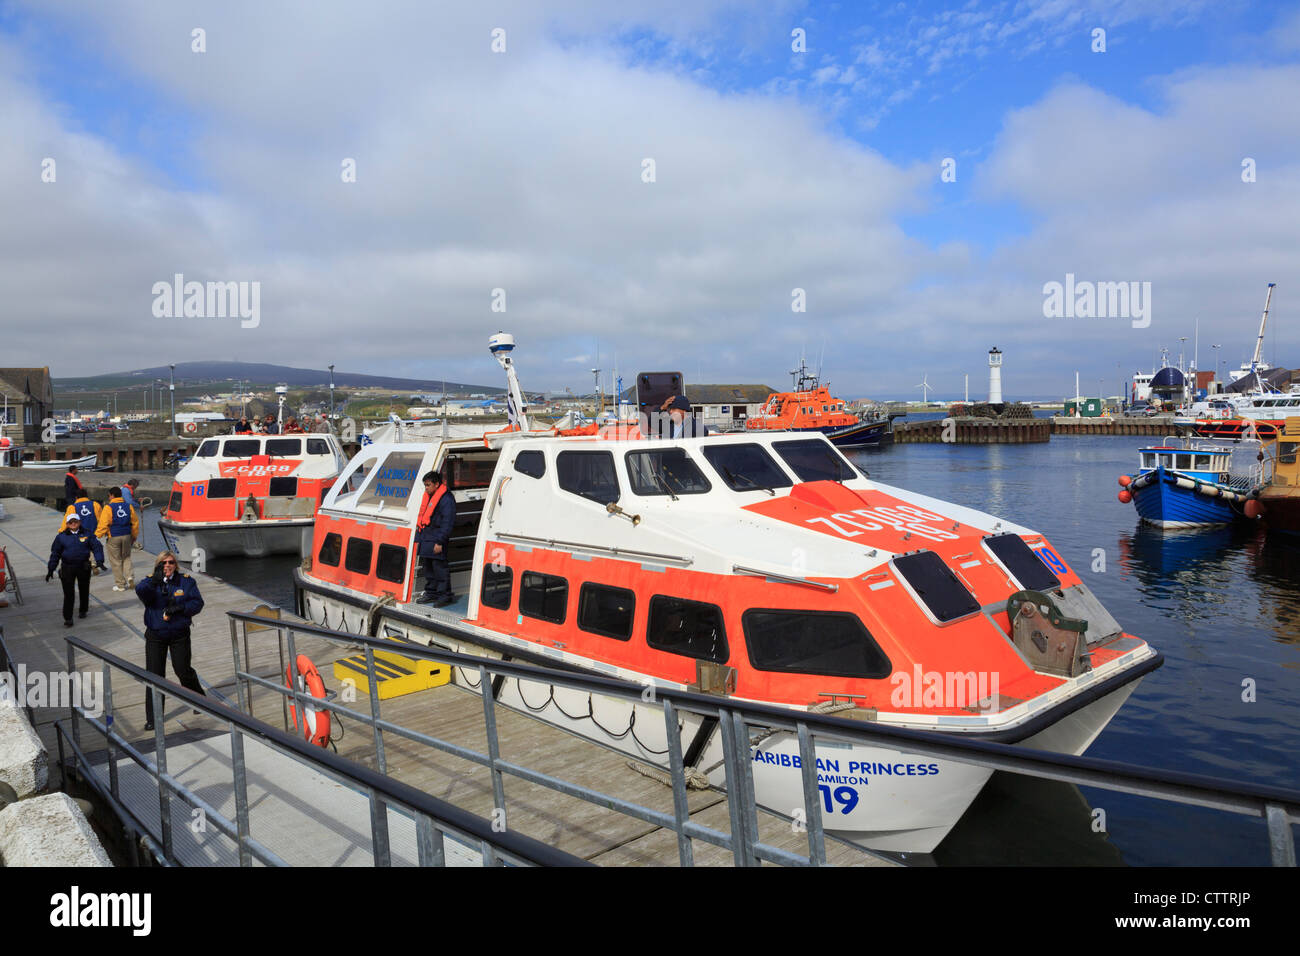 Landungsboote, die Ankunft im Hafen von Caribbean Princess Kreuzfahrt Schiff besuchen Kirkwall, Orkney Festland, Schottland, UK, Großbritannien Stockfoto